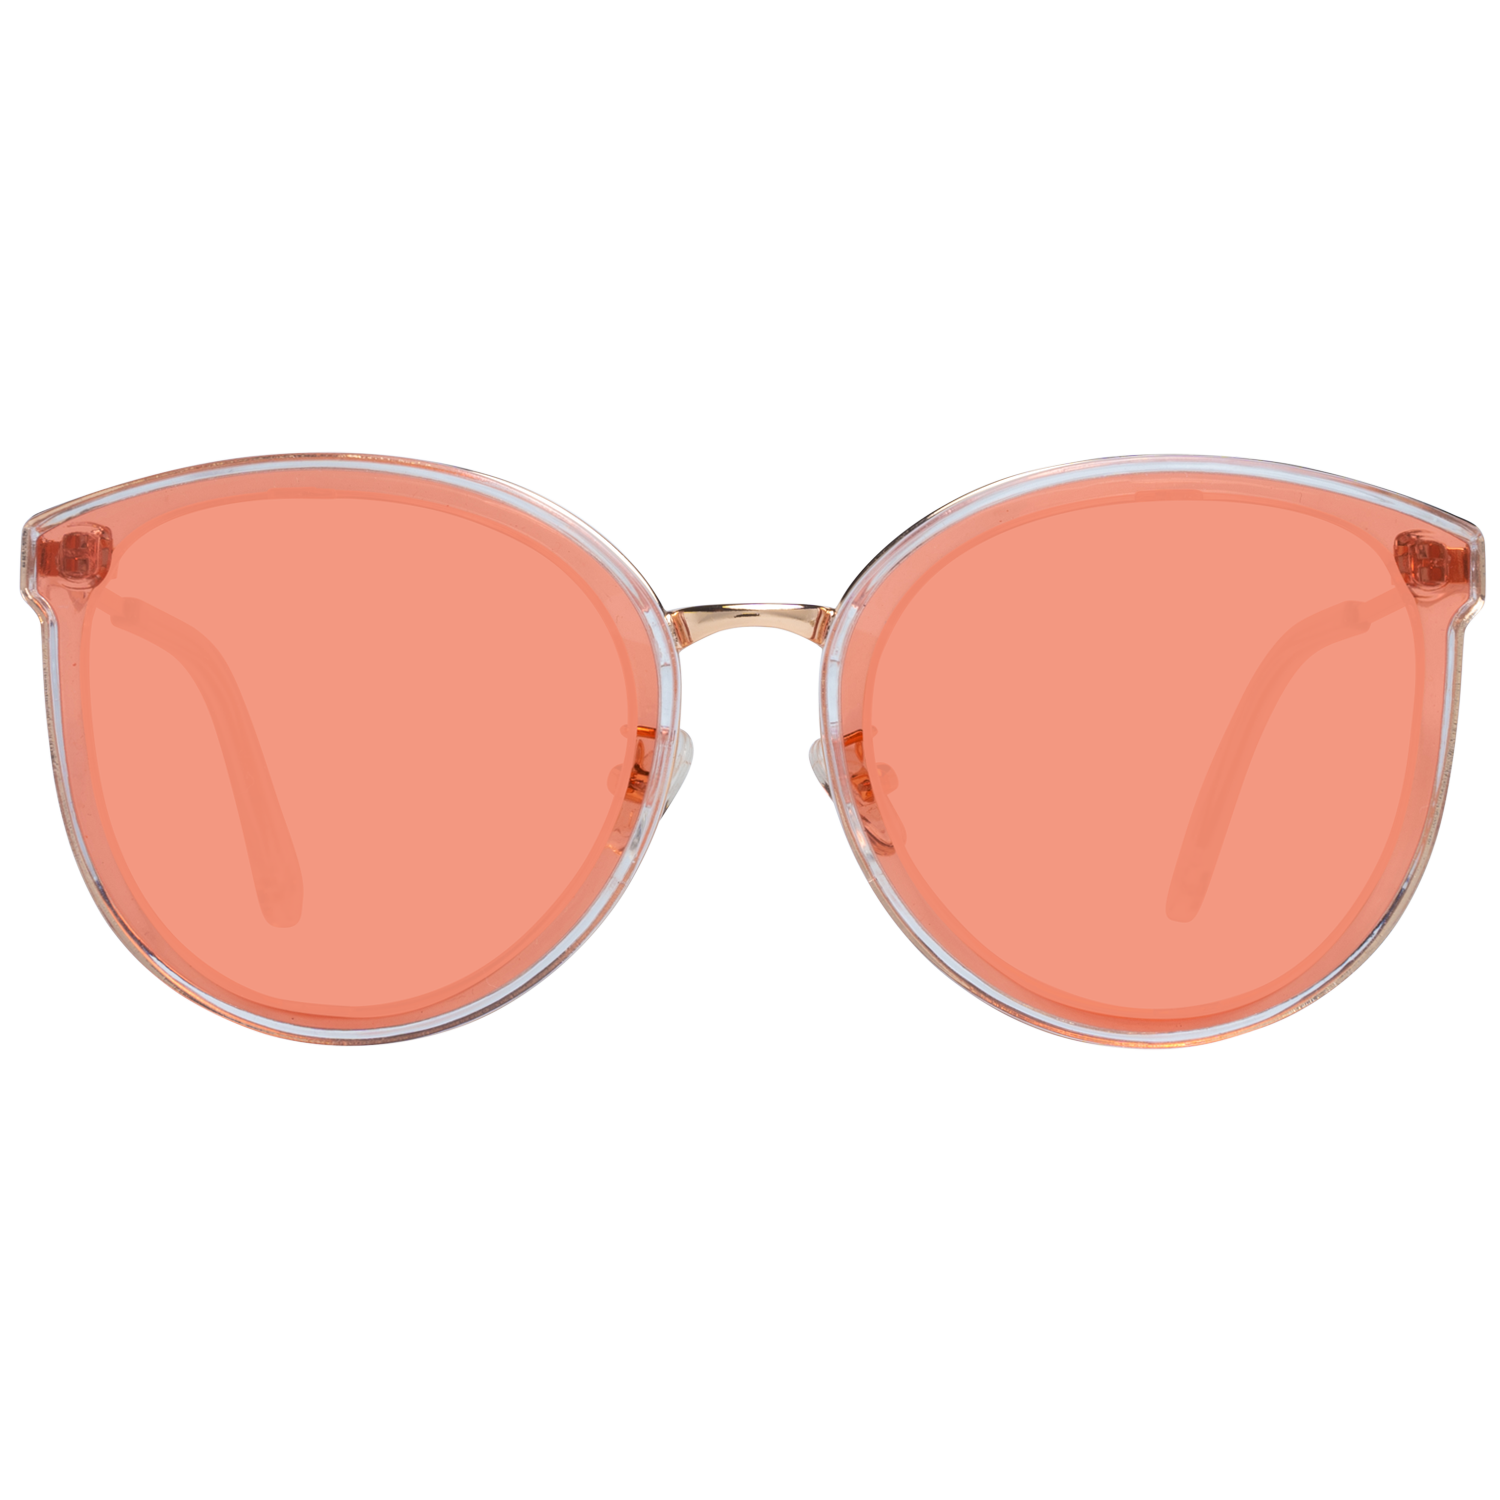 Spy Sunglasses Spy Sunglasses 6700000000008 Colada 63 Eyeglasses Eyewear UK USA Australia 